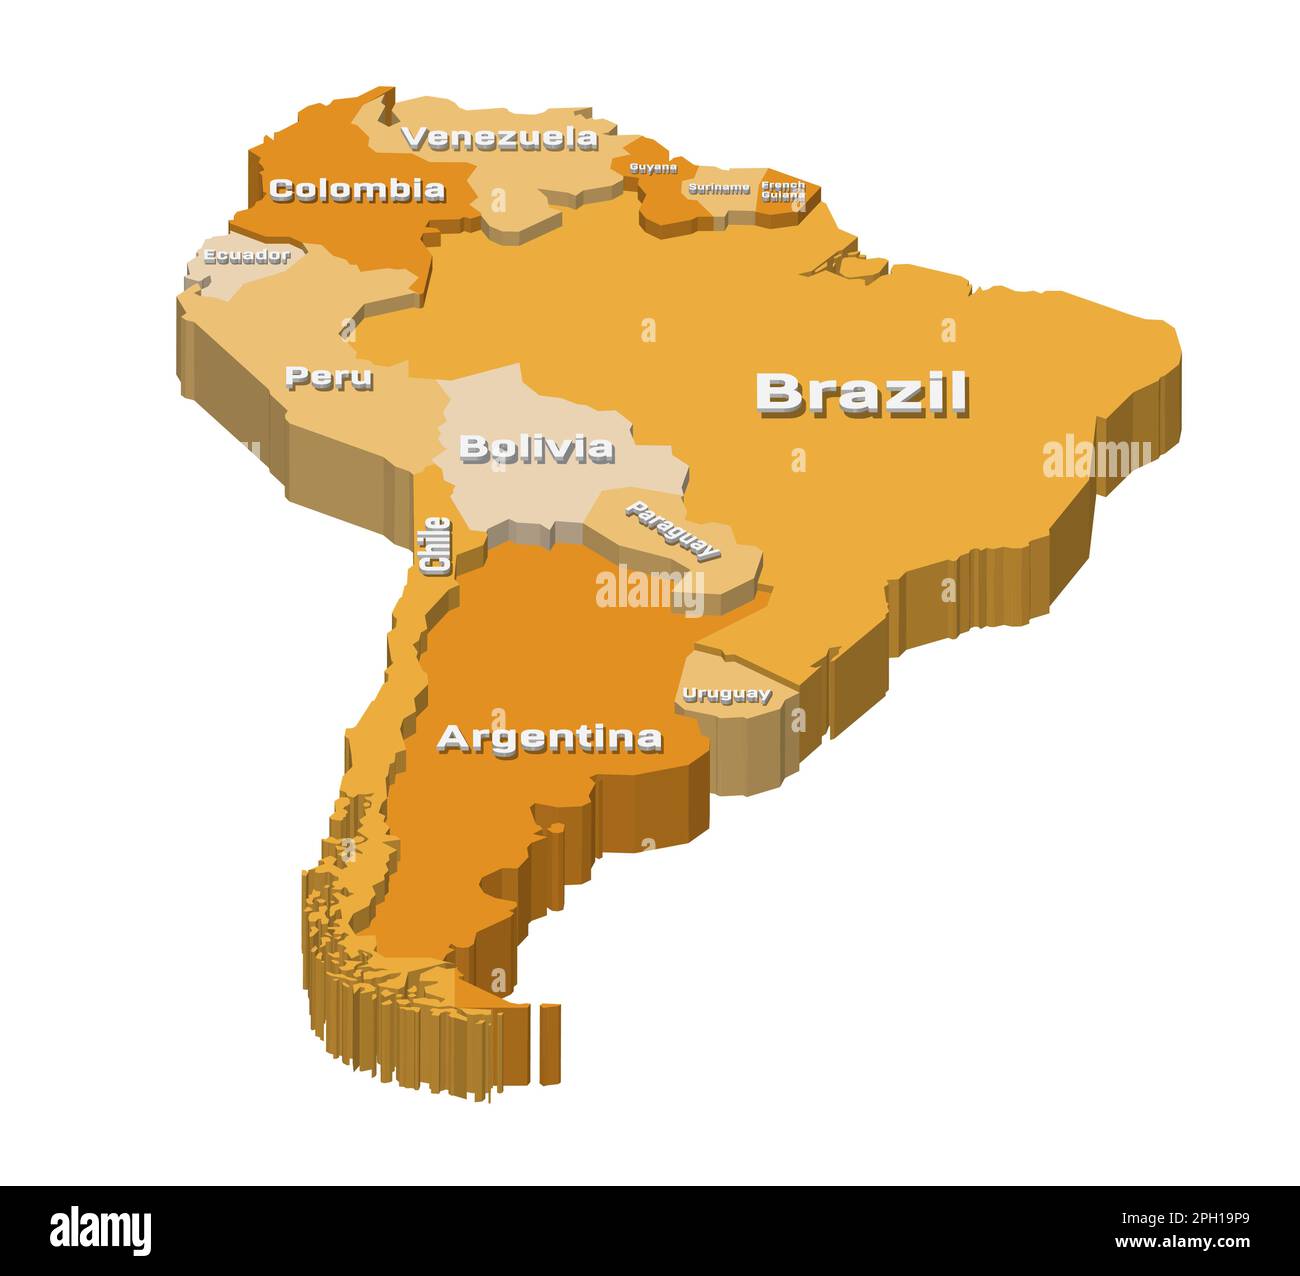 Amérique du Sud 3D (isométrique) carte à plusieurs niveaux avec inscriptions volumétriques Illustration de Vecteur